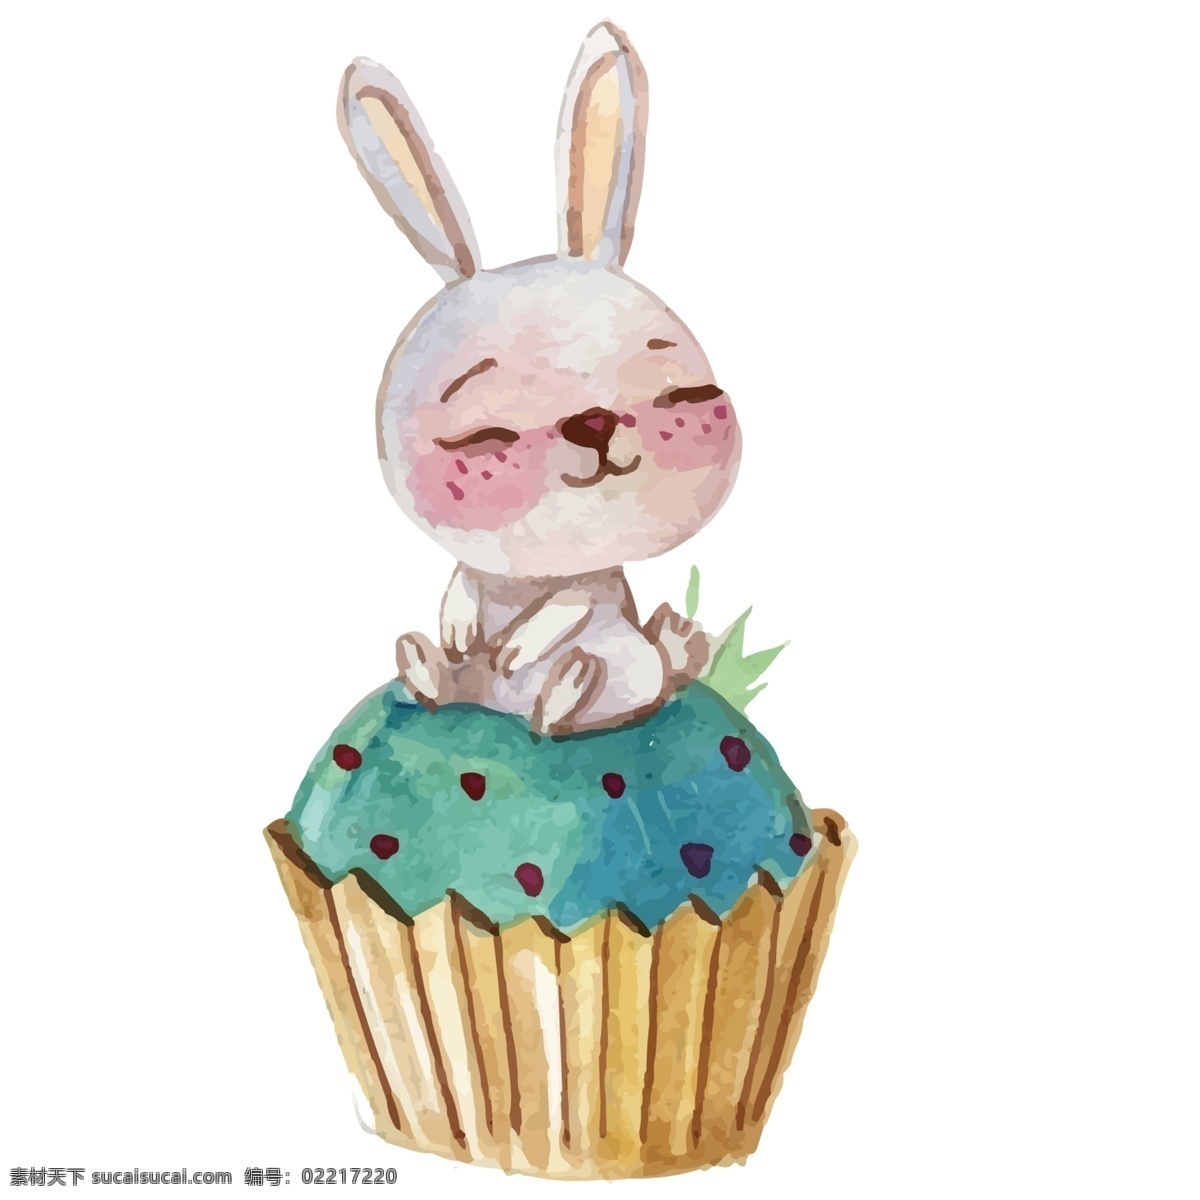 手绘蛋糕兔子 兔子插画 蛋糕插画 可爱兔子插画 清新插画 兔子手绘 插画 手绘兔子 卡通设计